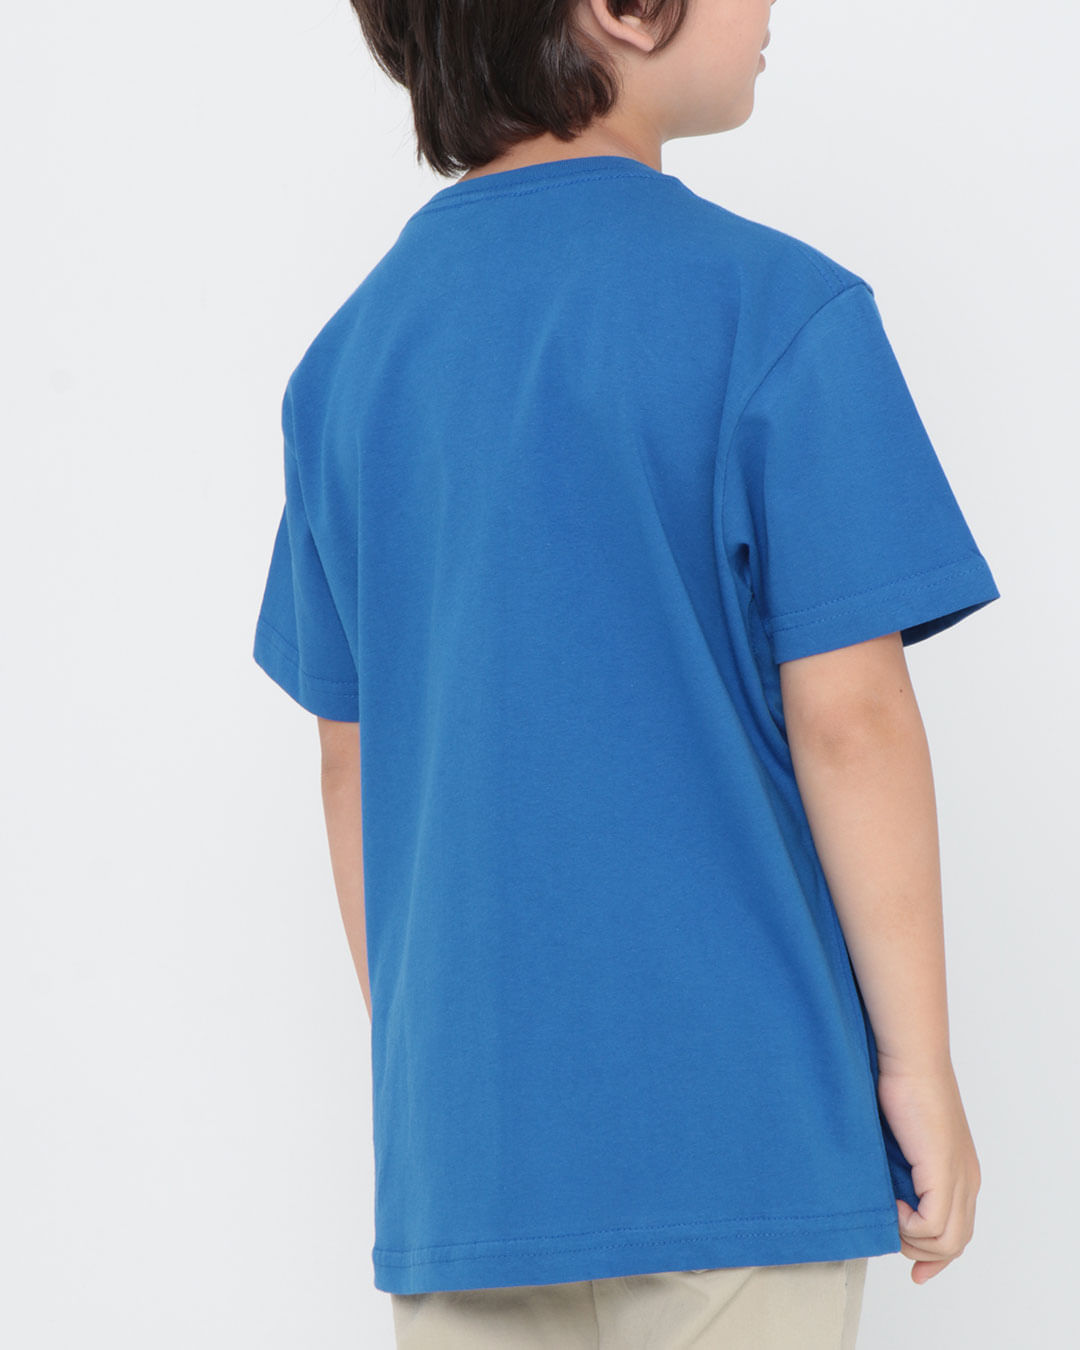 Camiseta-25004-Mc-M412-Superm---Azul-Medio